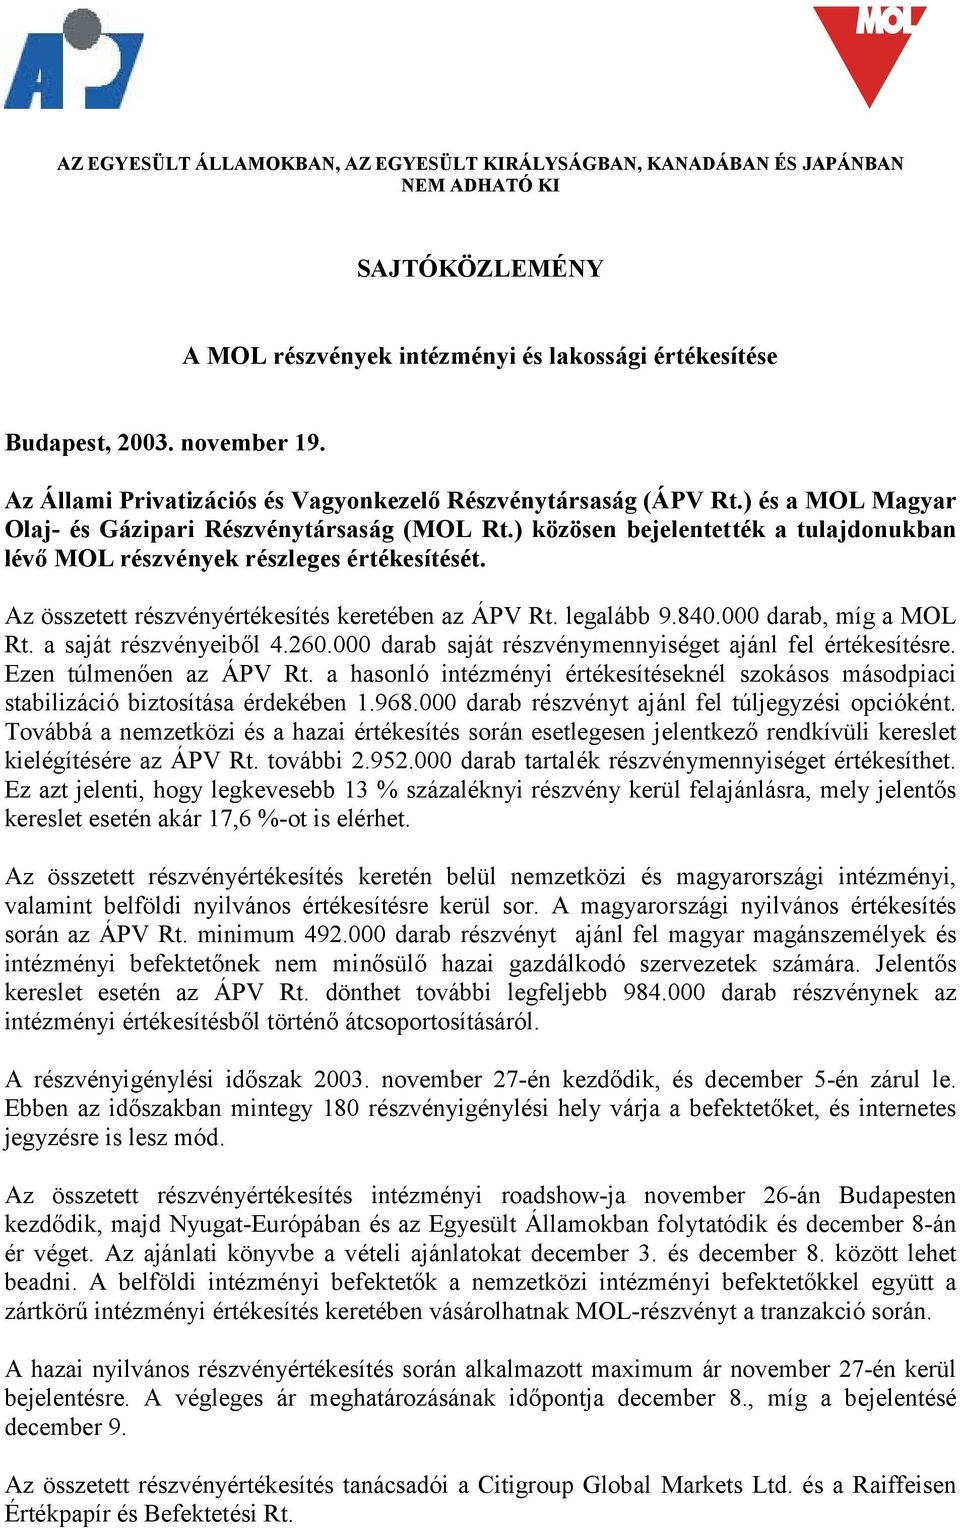 ) közösen bejelentették a tulajdonukban lévő MOL részvények részleges értékesítését. Az összetett részvényértékesítés keretében az ÁPV Rt. legalább 9.840.000 darab, míg a MOL Rt.